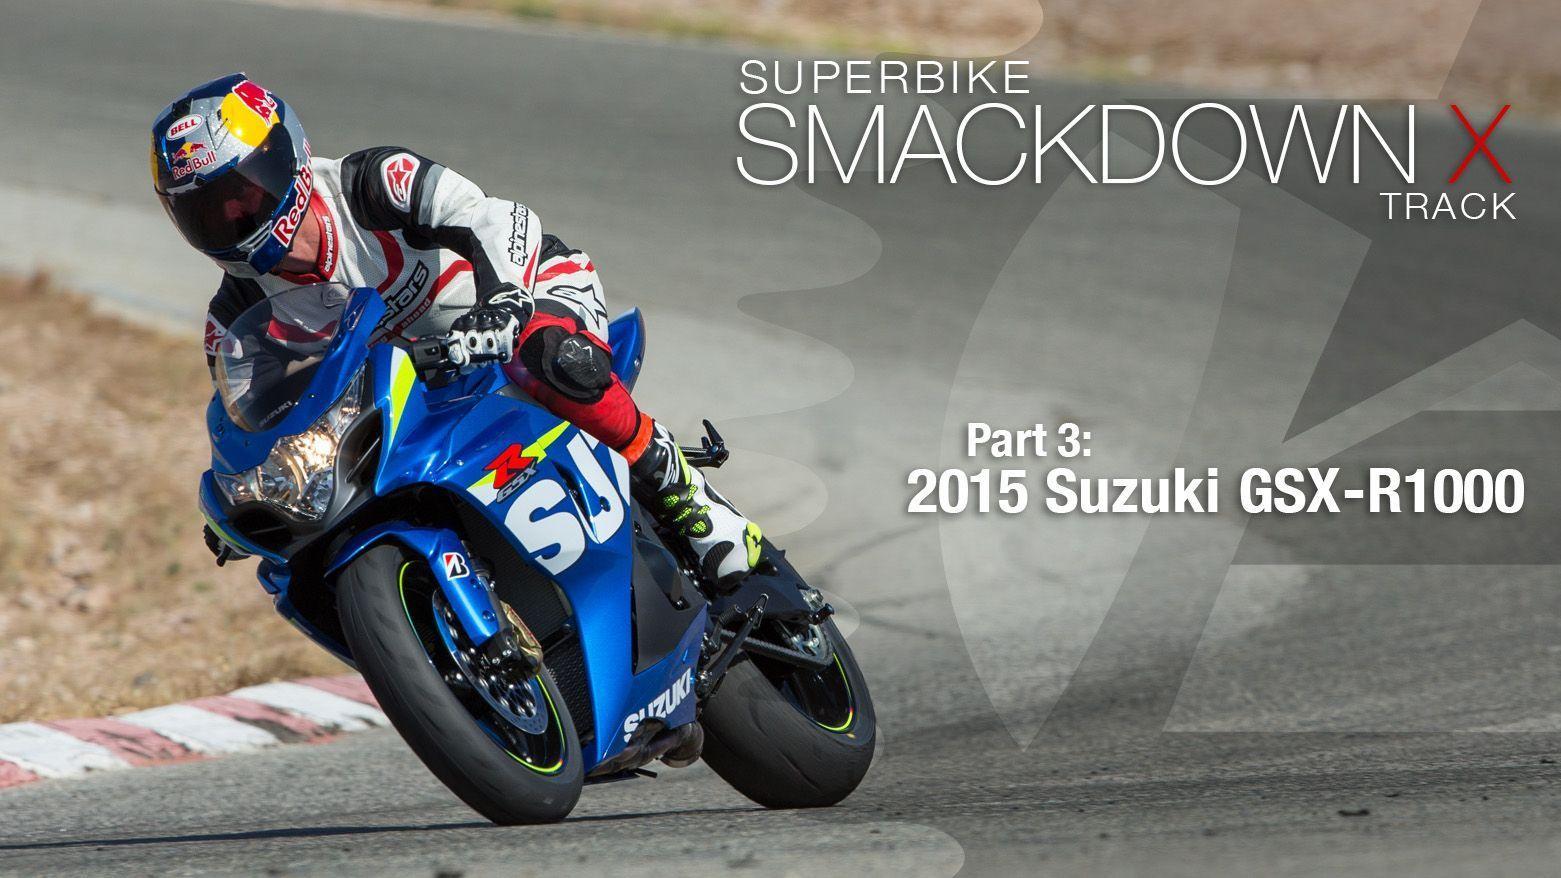 Suzuki GSXR 1000 News, Reviews, Photo And Videos